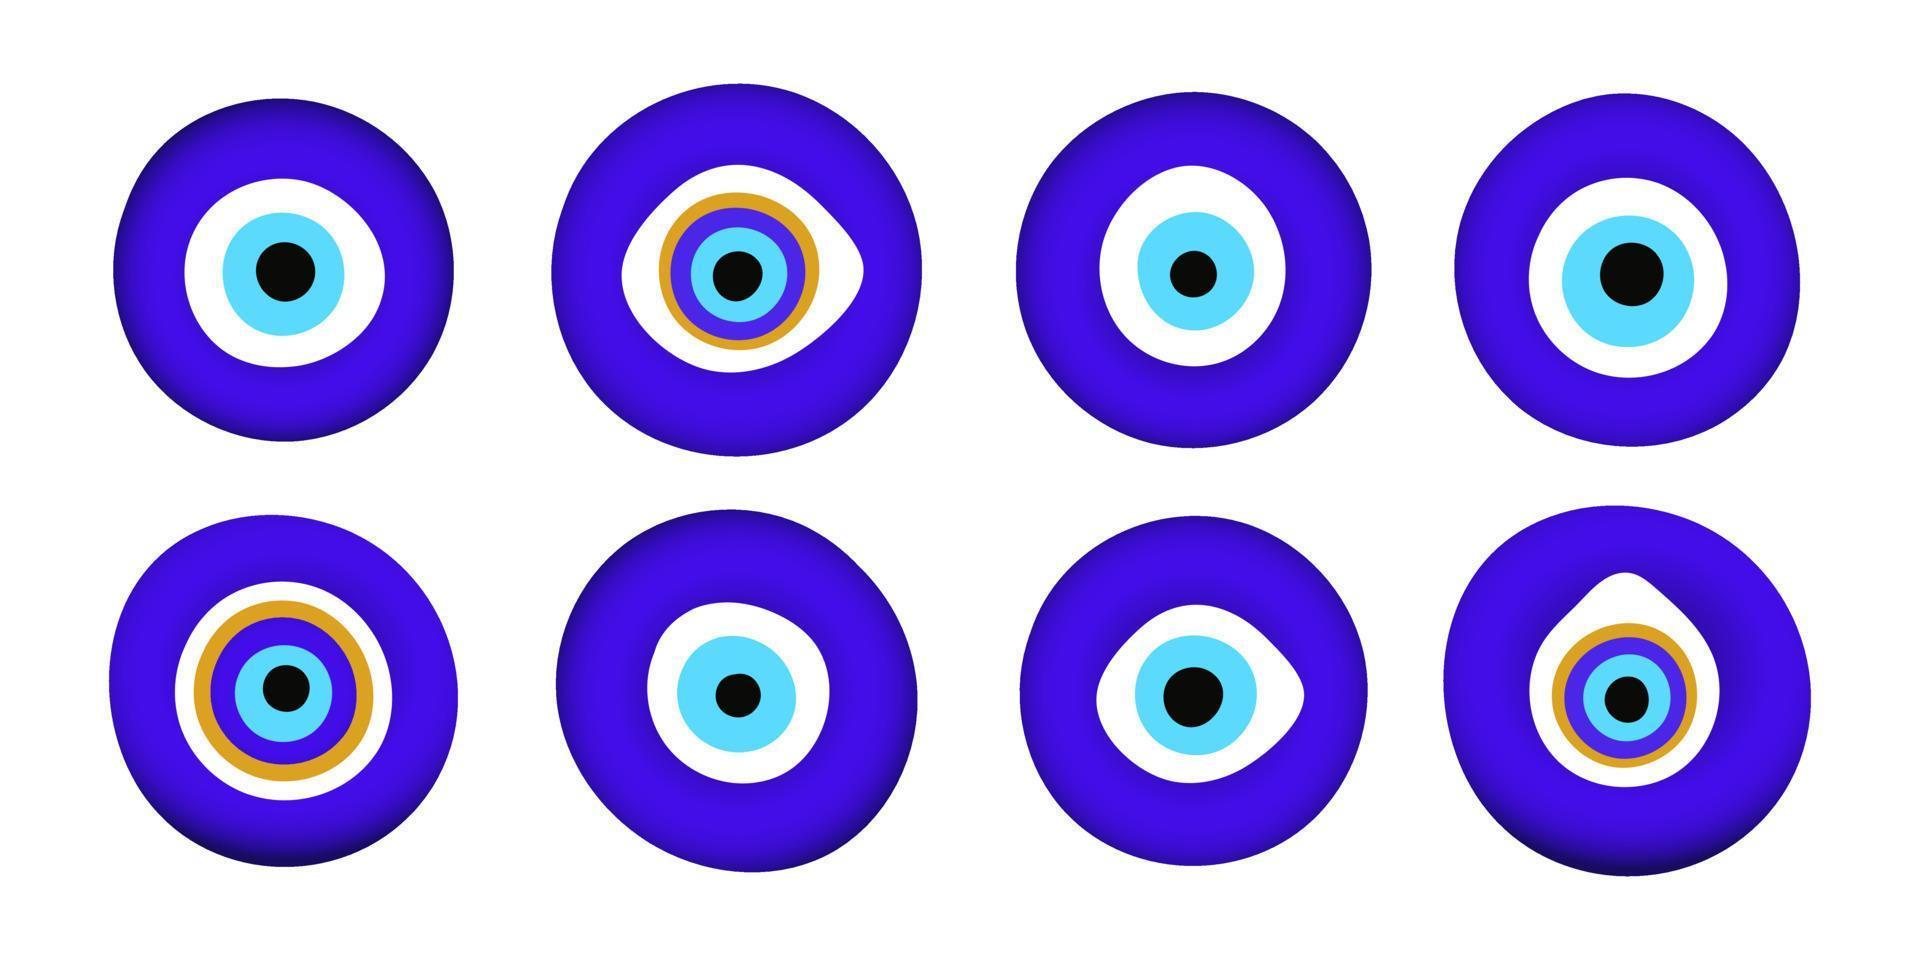 azul oriental mal de ojo símbolo amuleto estilo plano diseño vector ilustración conjunto aislado sobre fondo blanco.